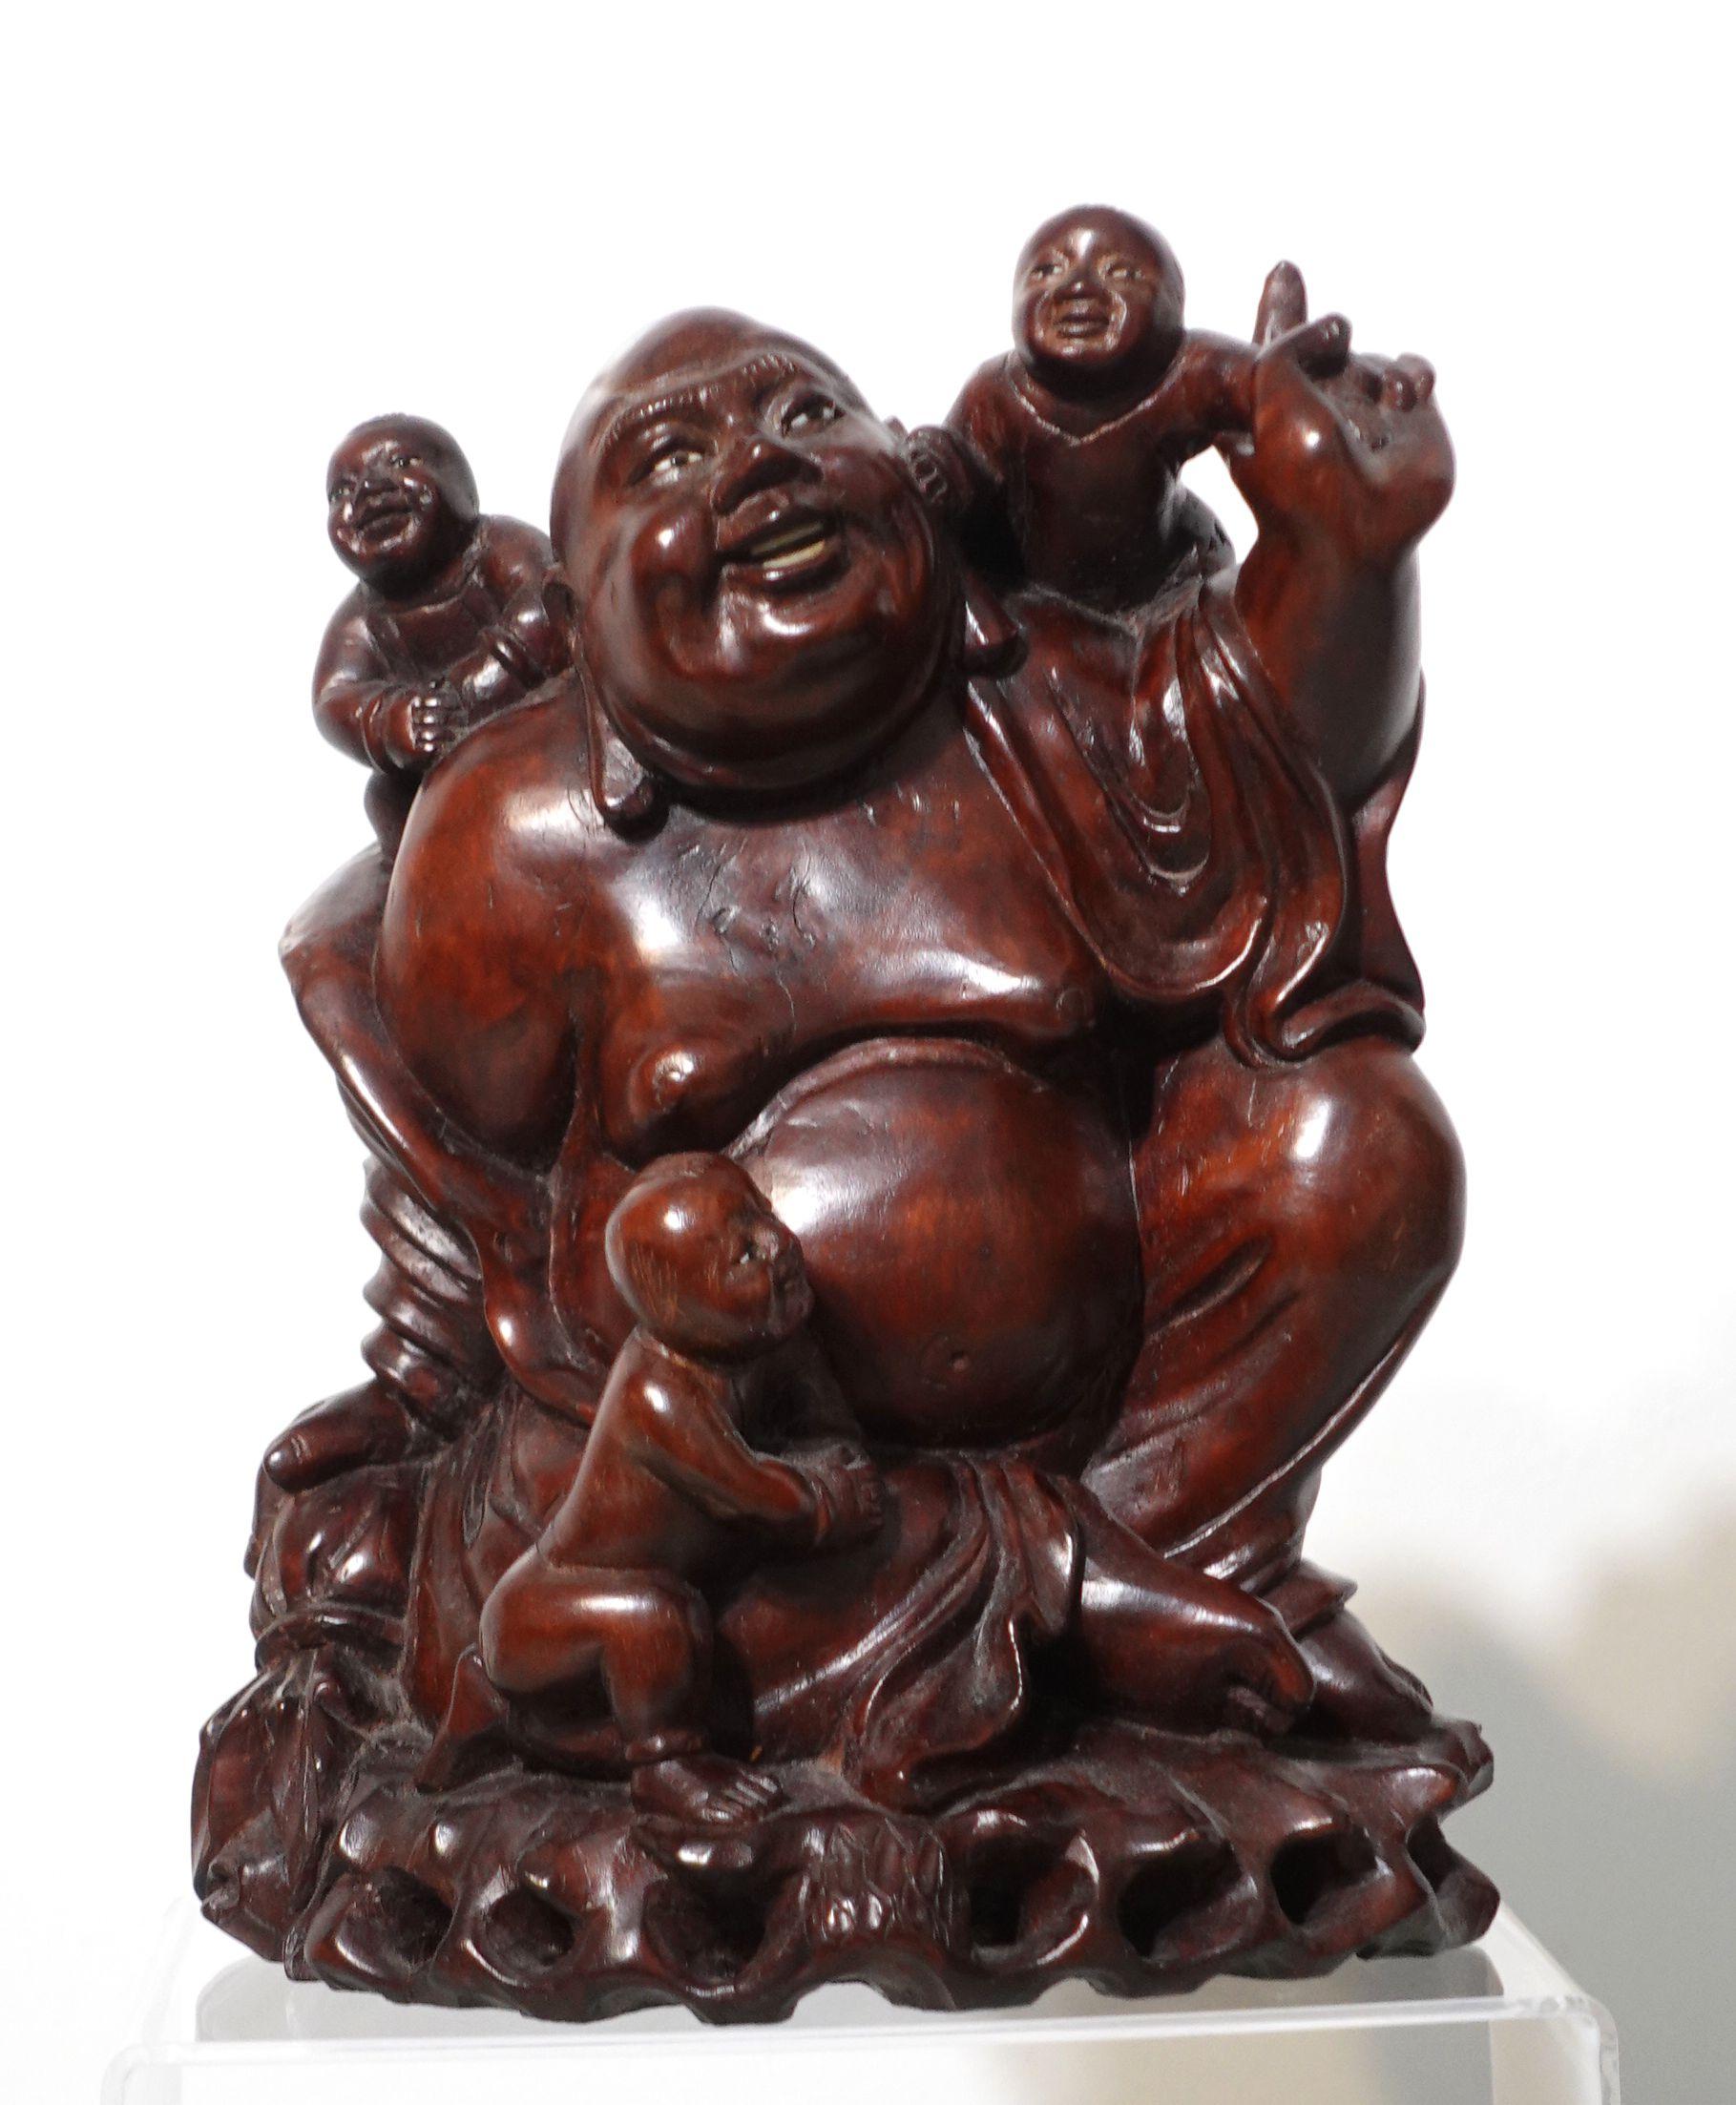 Un grand Bouddha heureux en bois sculpté avec 3 enfants, des dents en os et des yeux en verre incrustés.